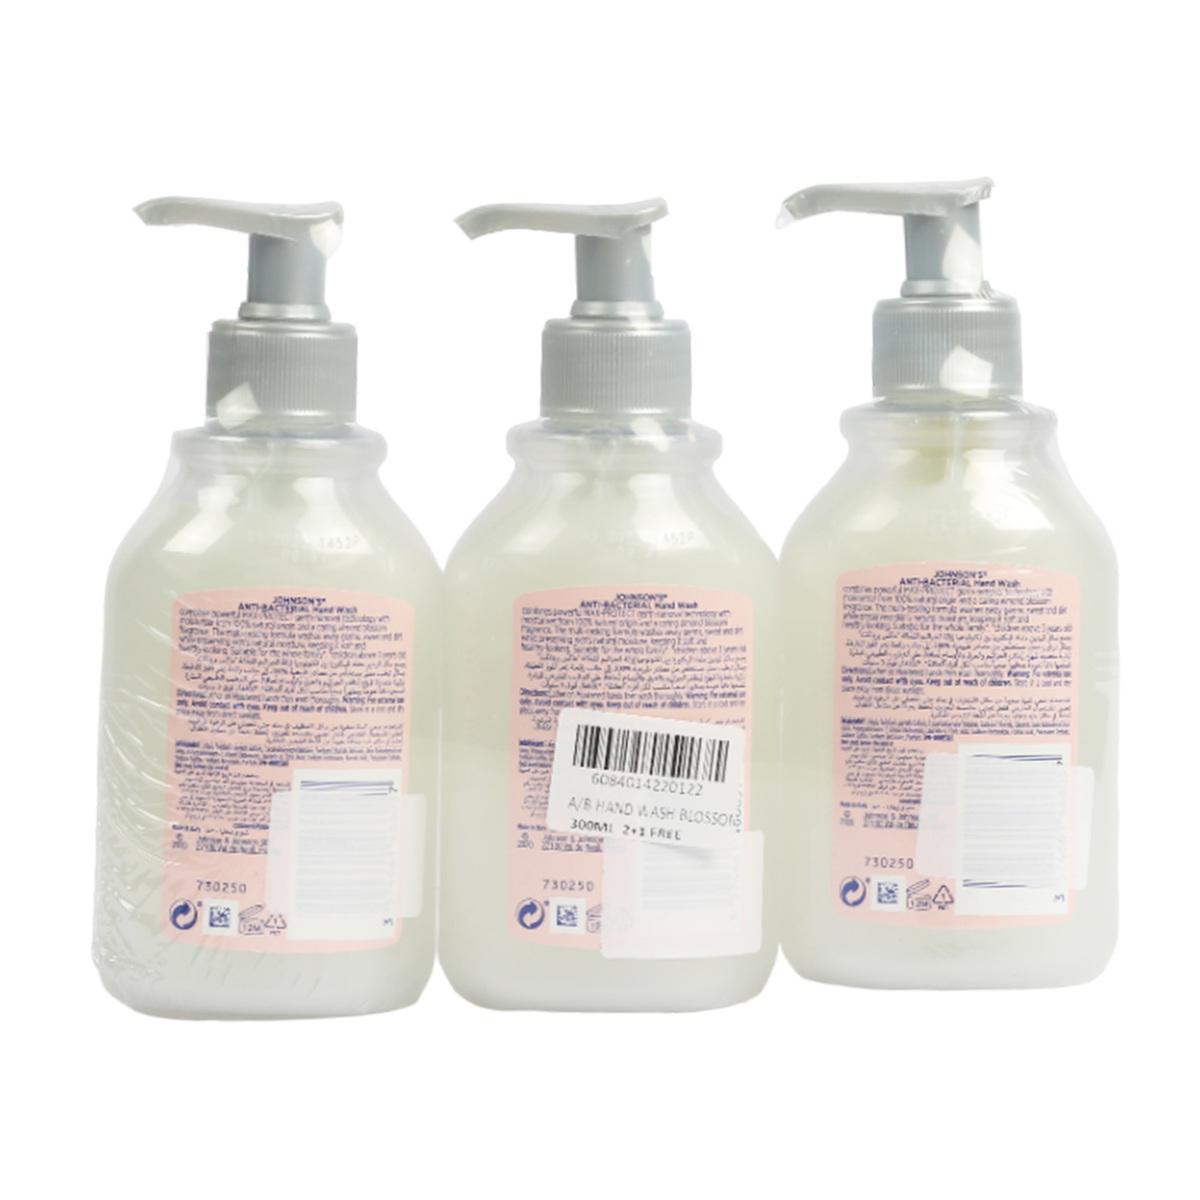 جونسون صابون يدين مضاد للبكتيريا متنوع 3 × 300 مل